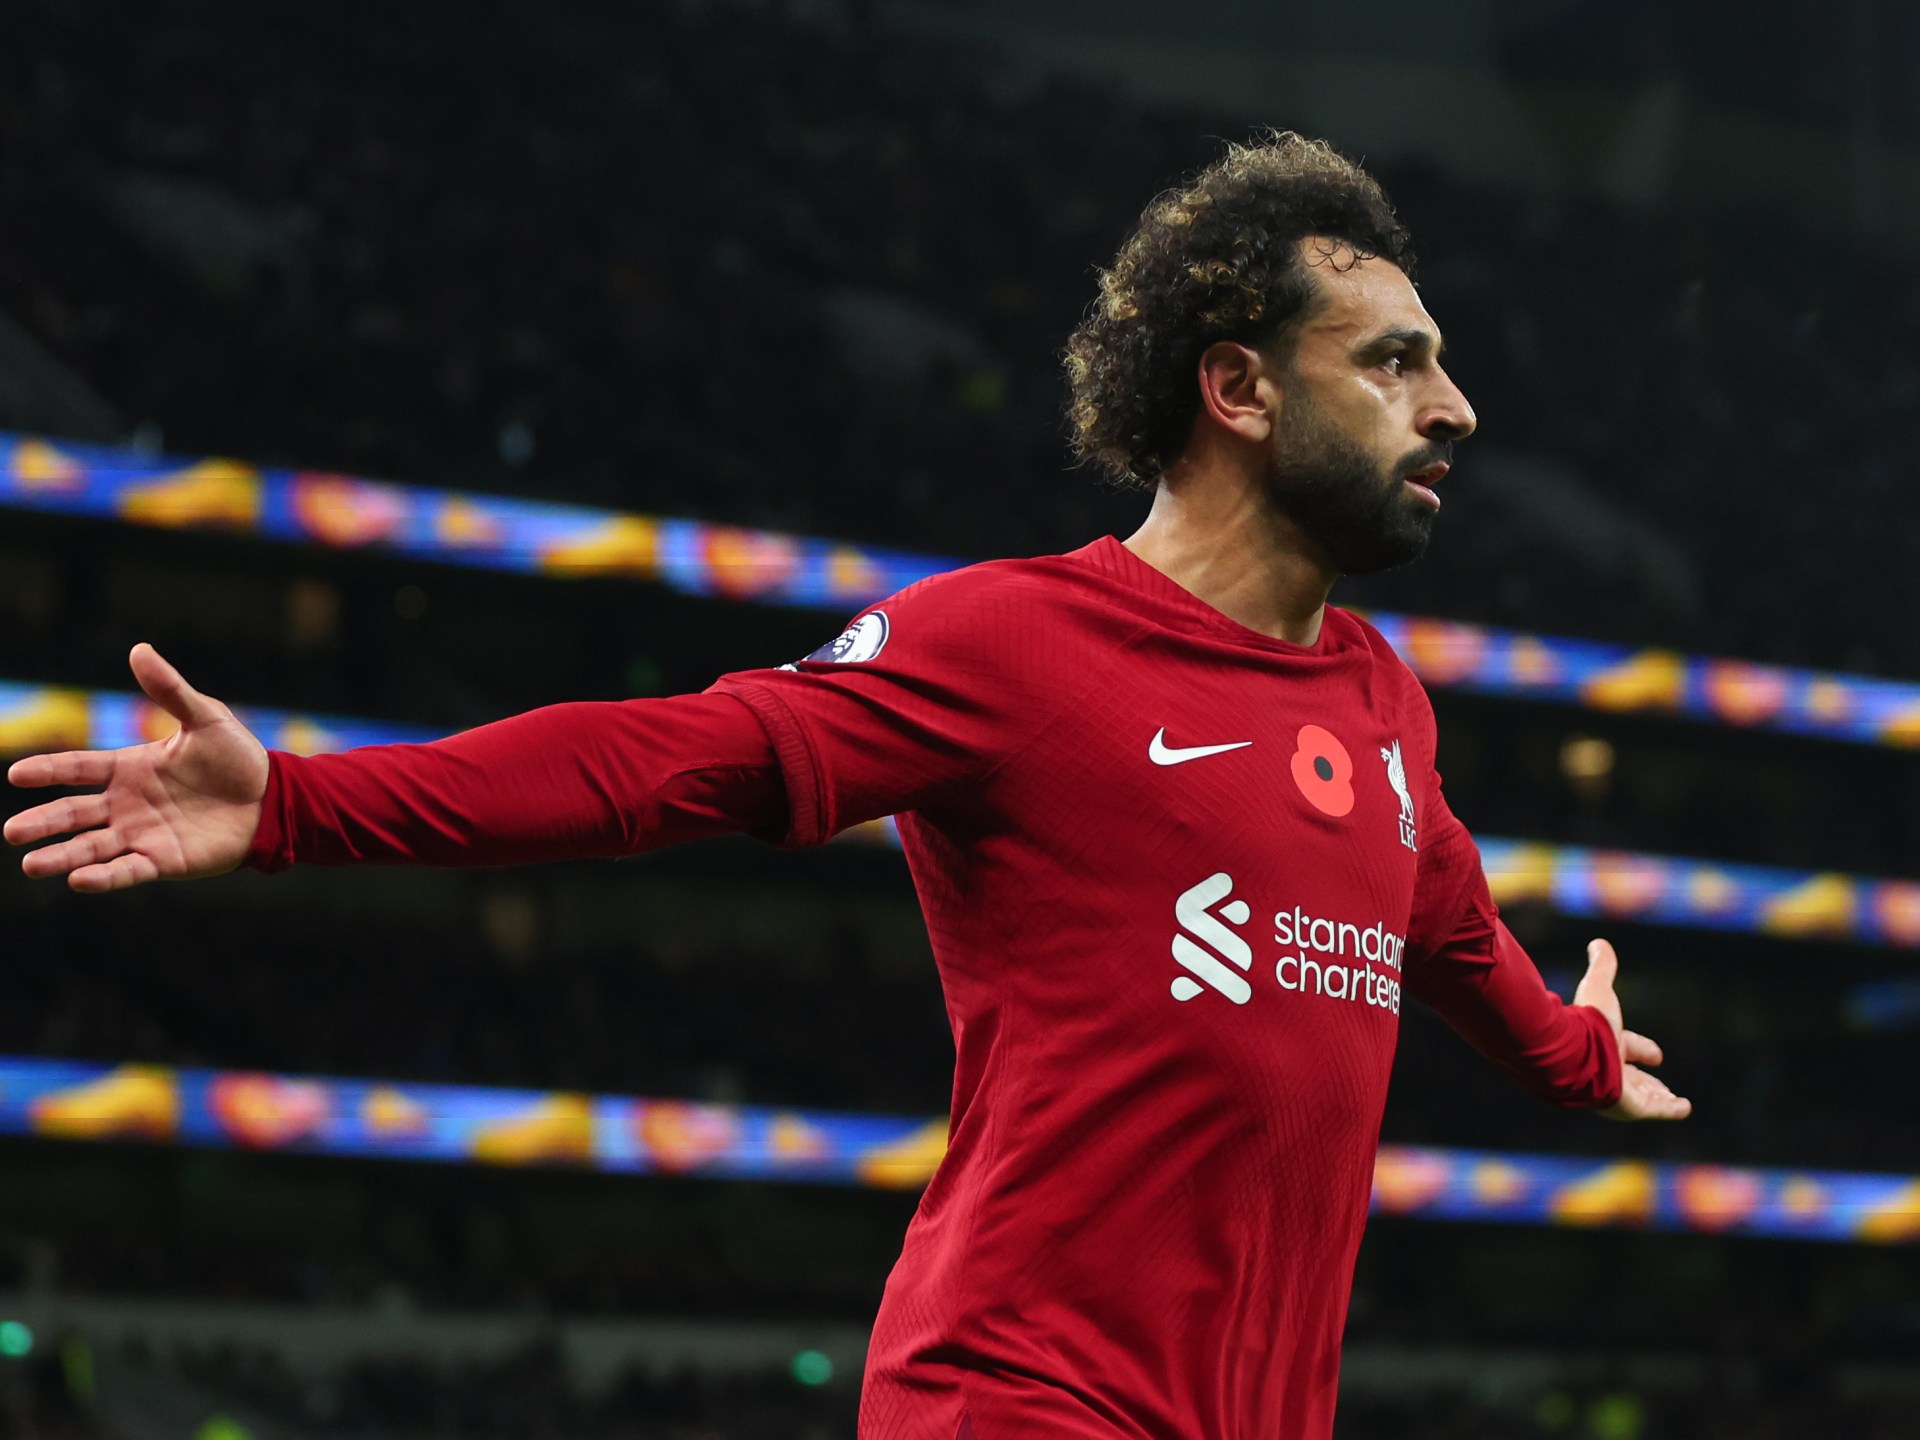 Le doublé de Salah remporte Liverpool aux dépens de Tottenham (vidéo) |  Nouvelles sportives